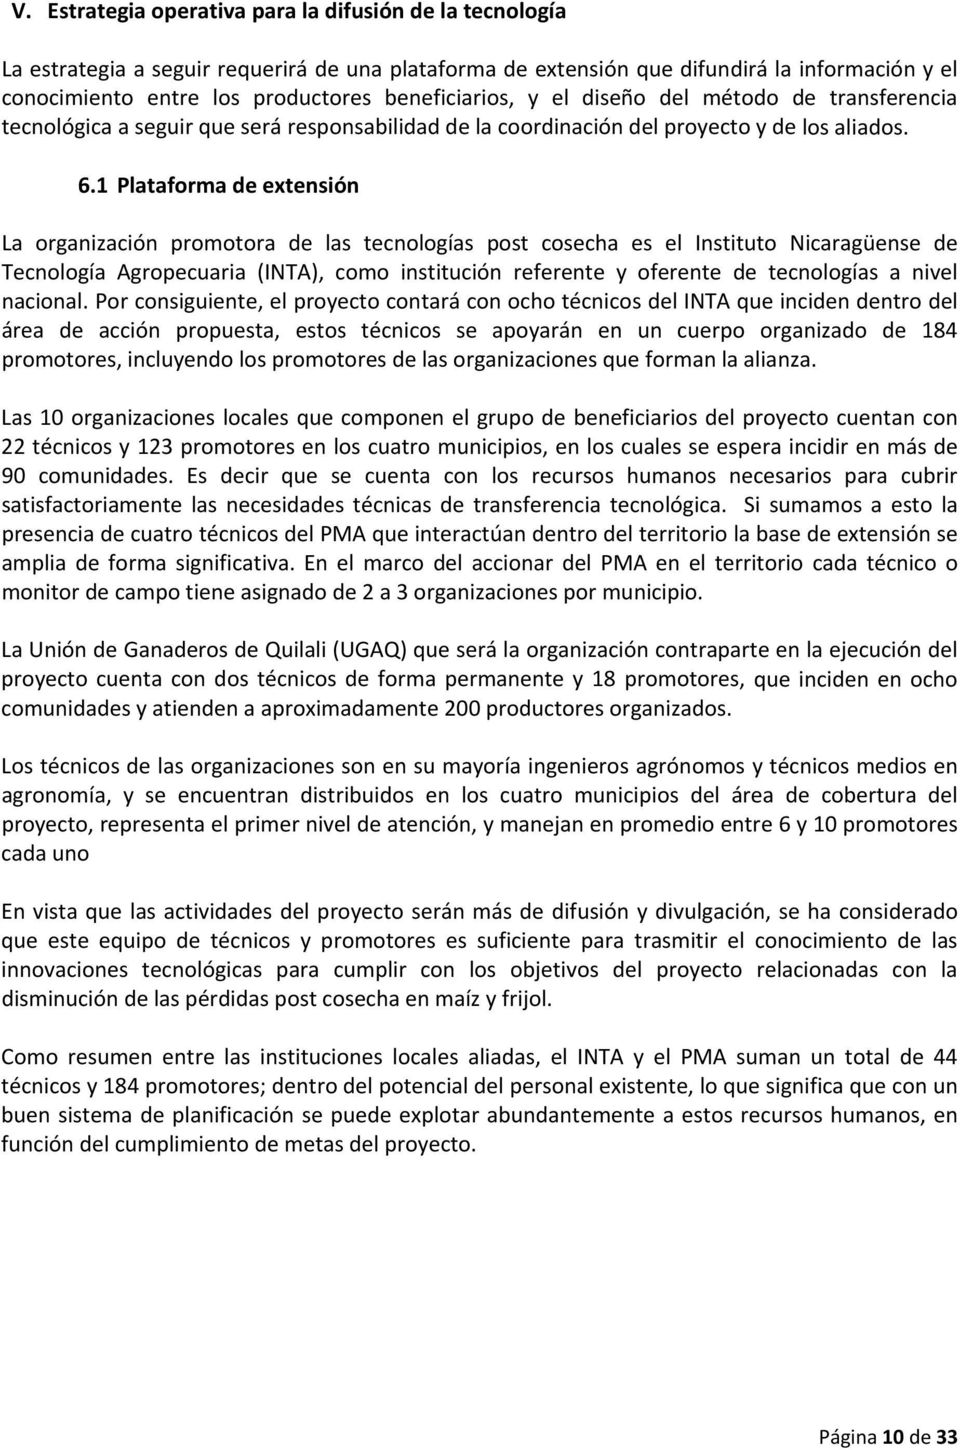 1 Plataforma de extensión La organización promotora de las tecnologías post cosecha es el Instituto Nicaragüense de Tecnología Agropecuaria (INTA), como institución referente y oferente de